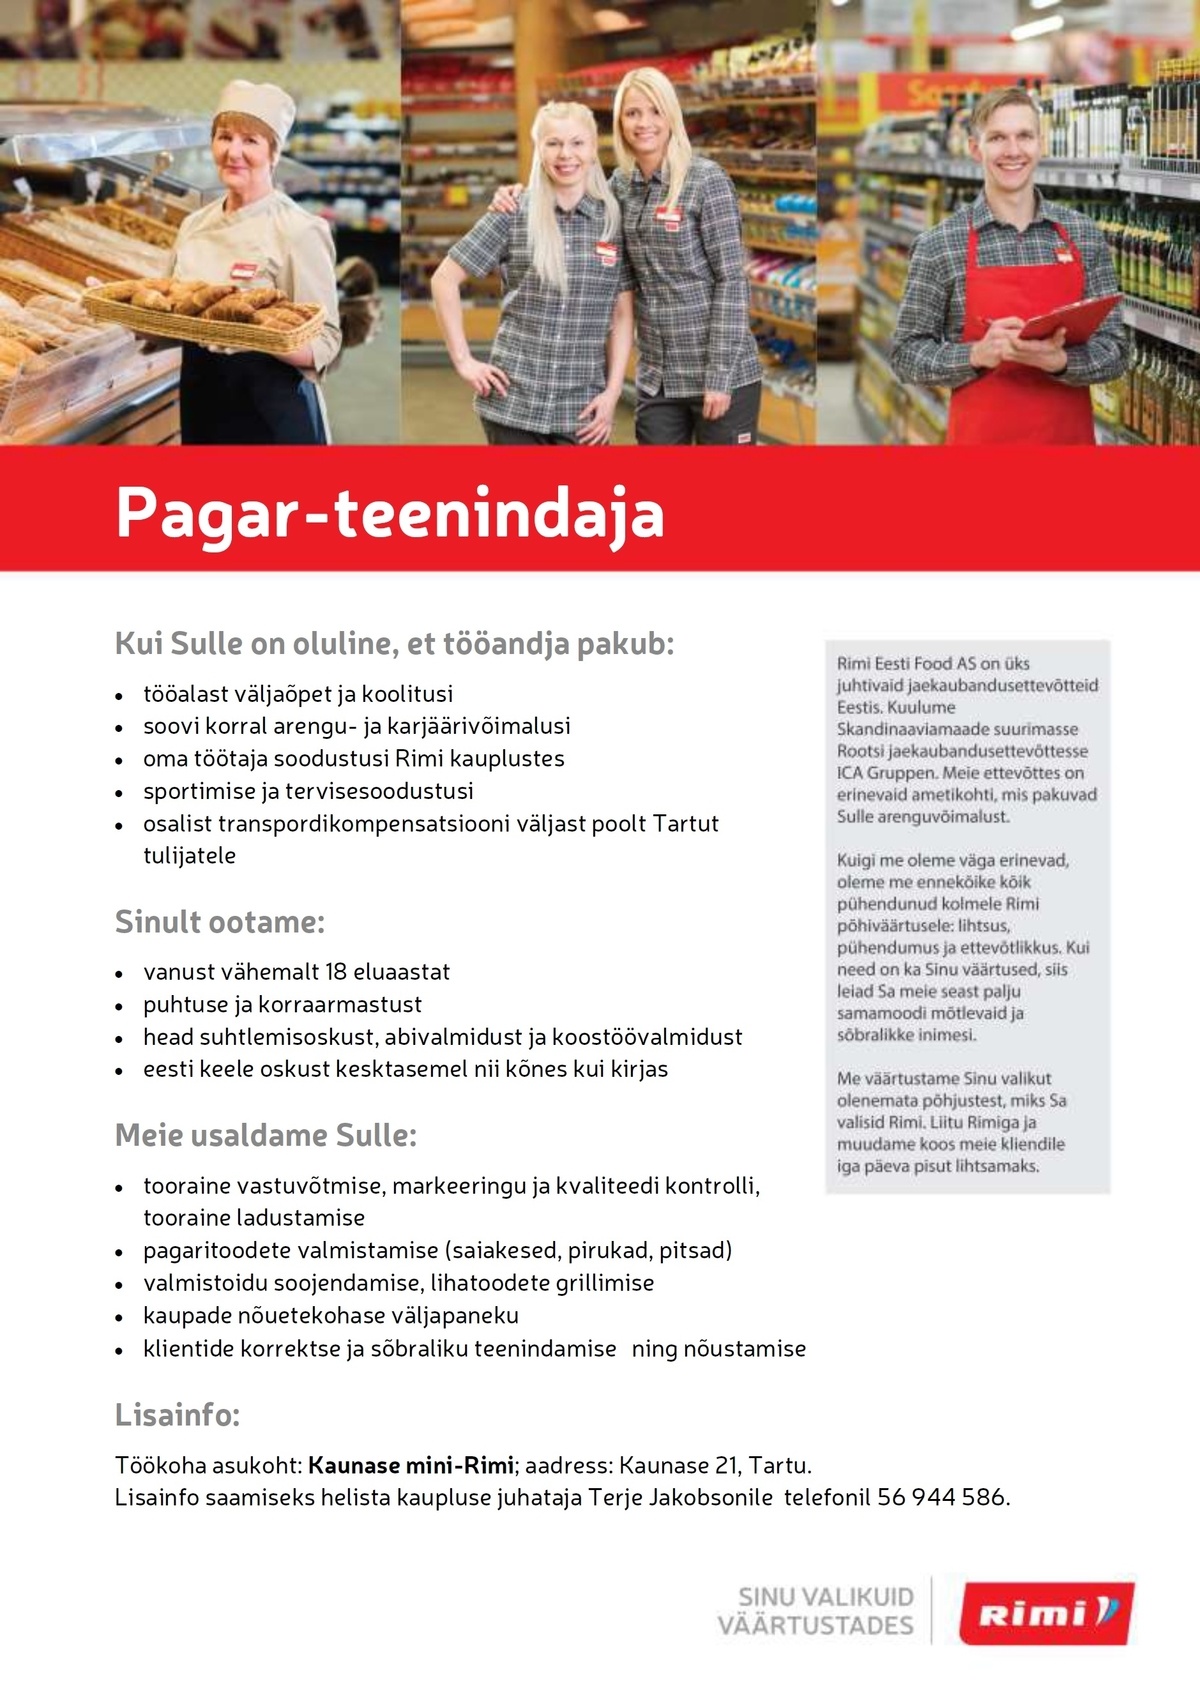 Rimi Eesti Food AS Pagar- teenindaja Kaunase mini-Rimis